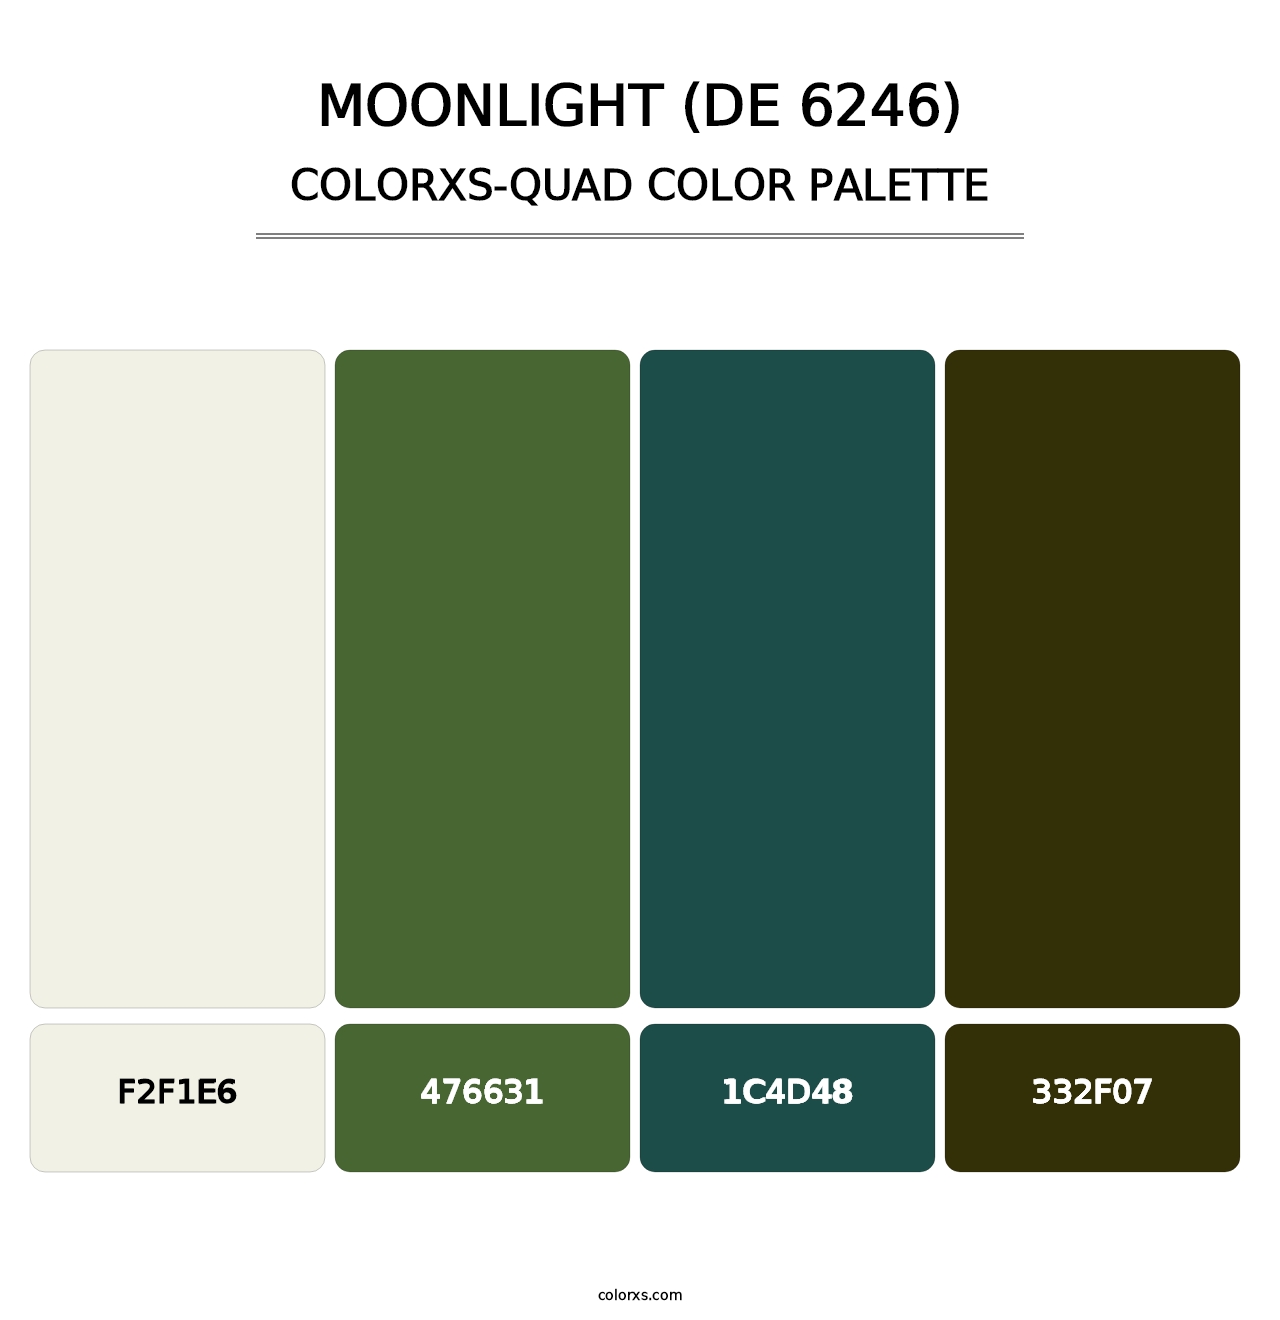 Moonlight (DE 6246) - Colorxs Quad Palette